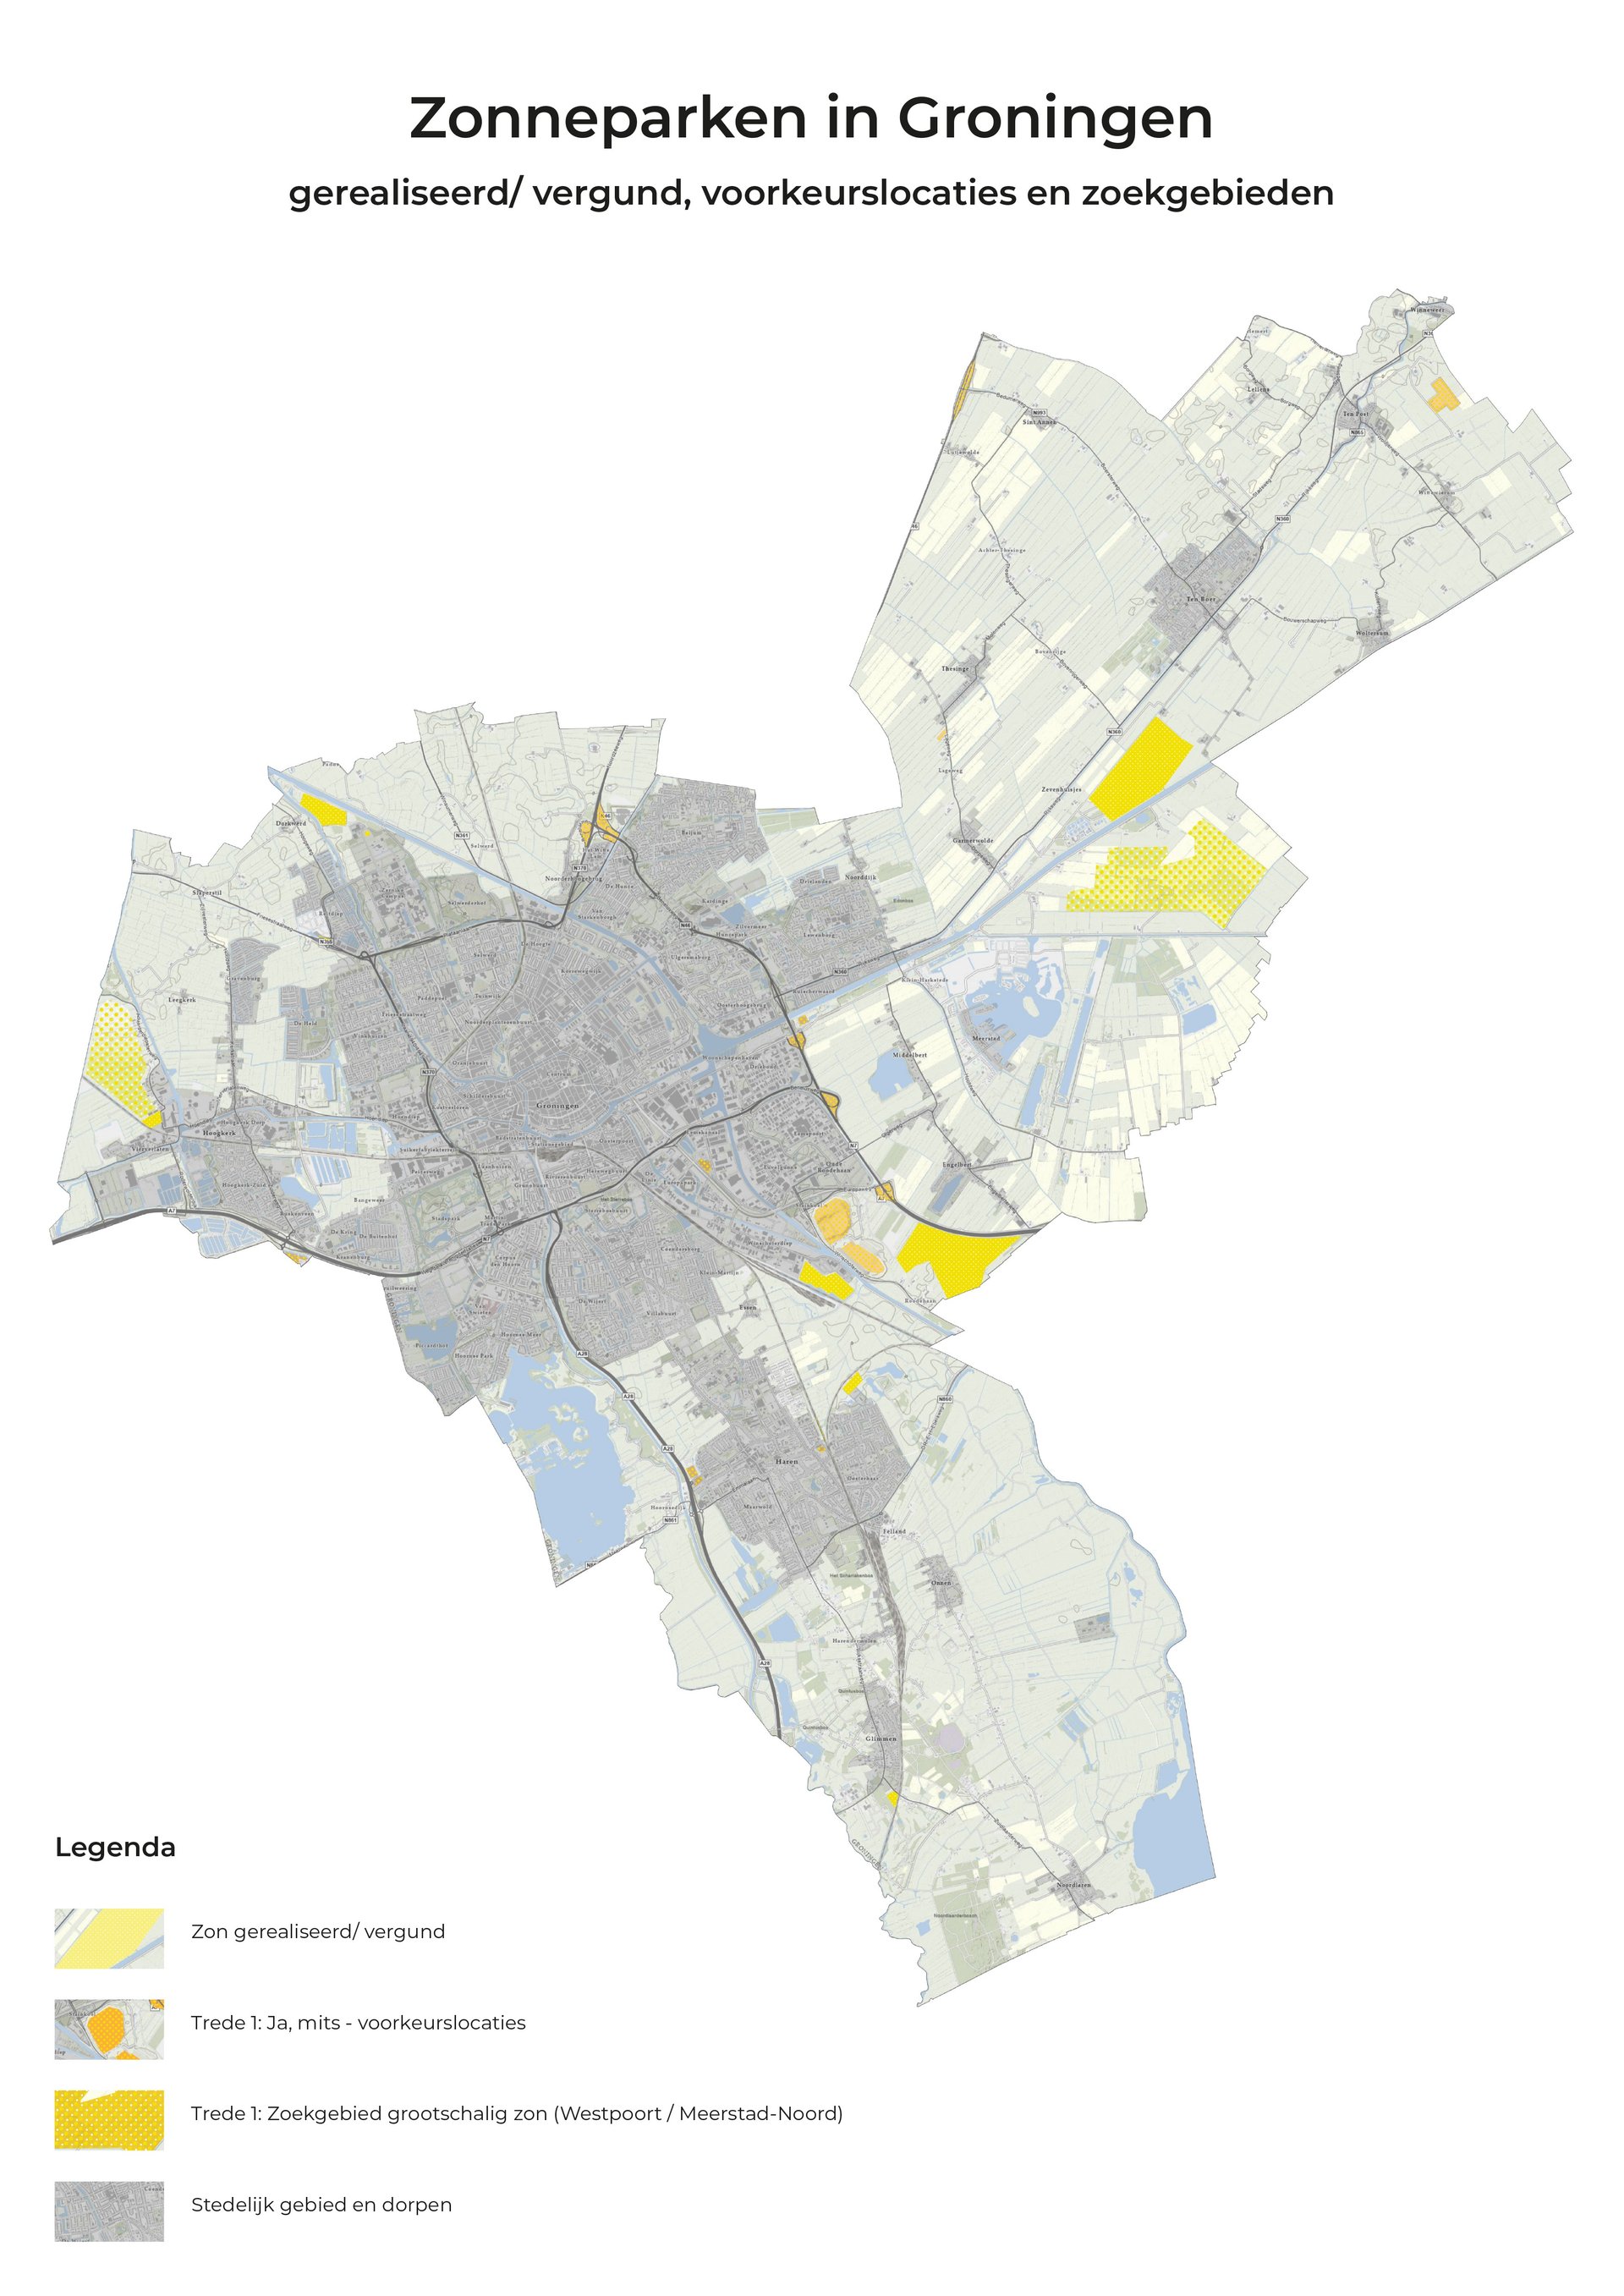 Afbeelding met kaart van zonneparken en locaties in de gemeente Groningen